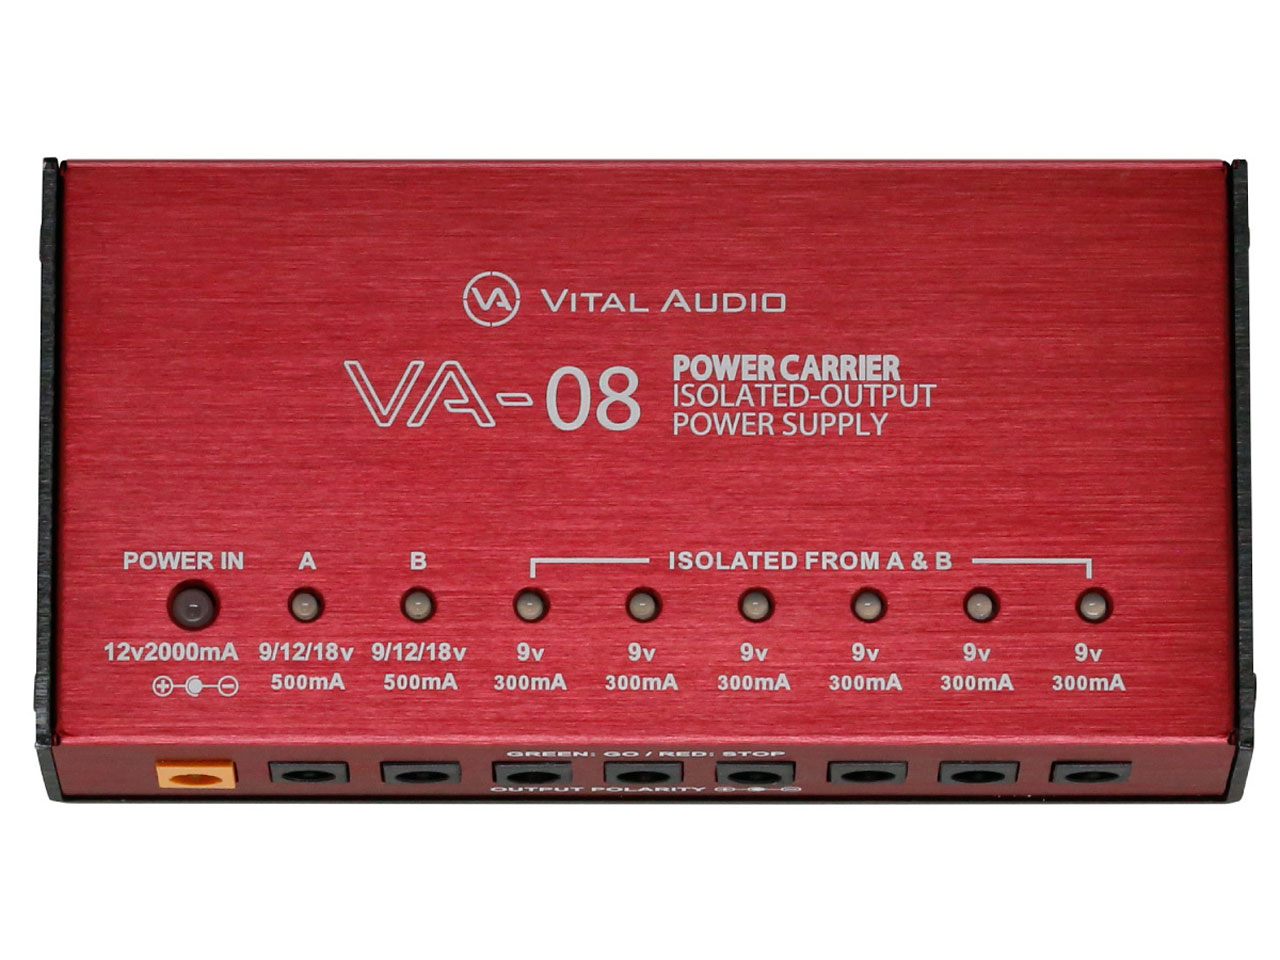 【即納可能】Vital Audio POWER CARRIER VA-08 MkⅡ<br>(パワーサプライ)(バイタルオーディオ) 駅前店